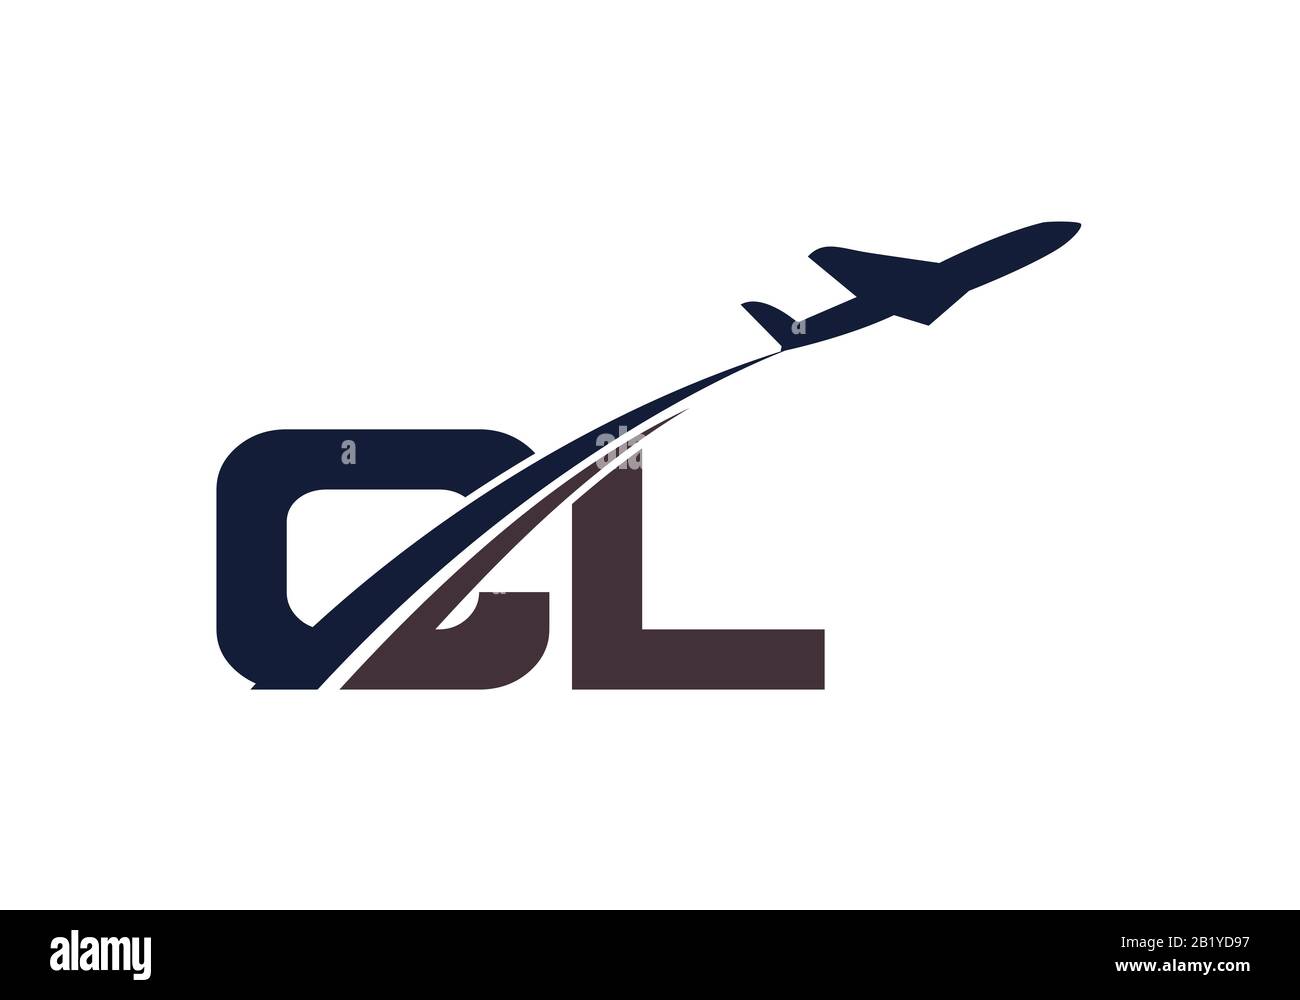 Lettera iniziale C e L con logo Aviation, modello Air, Airline, Airplane e Travel Logo. Illustrazione Vettoriale